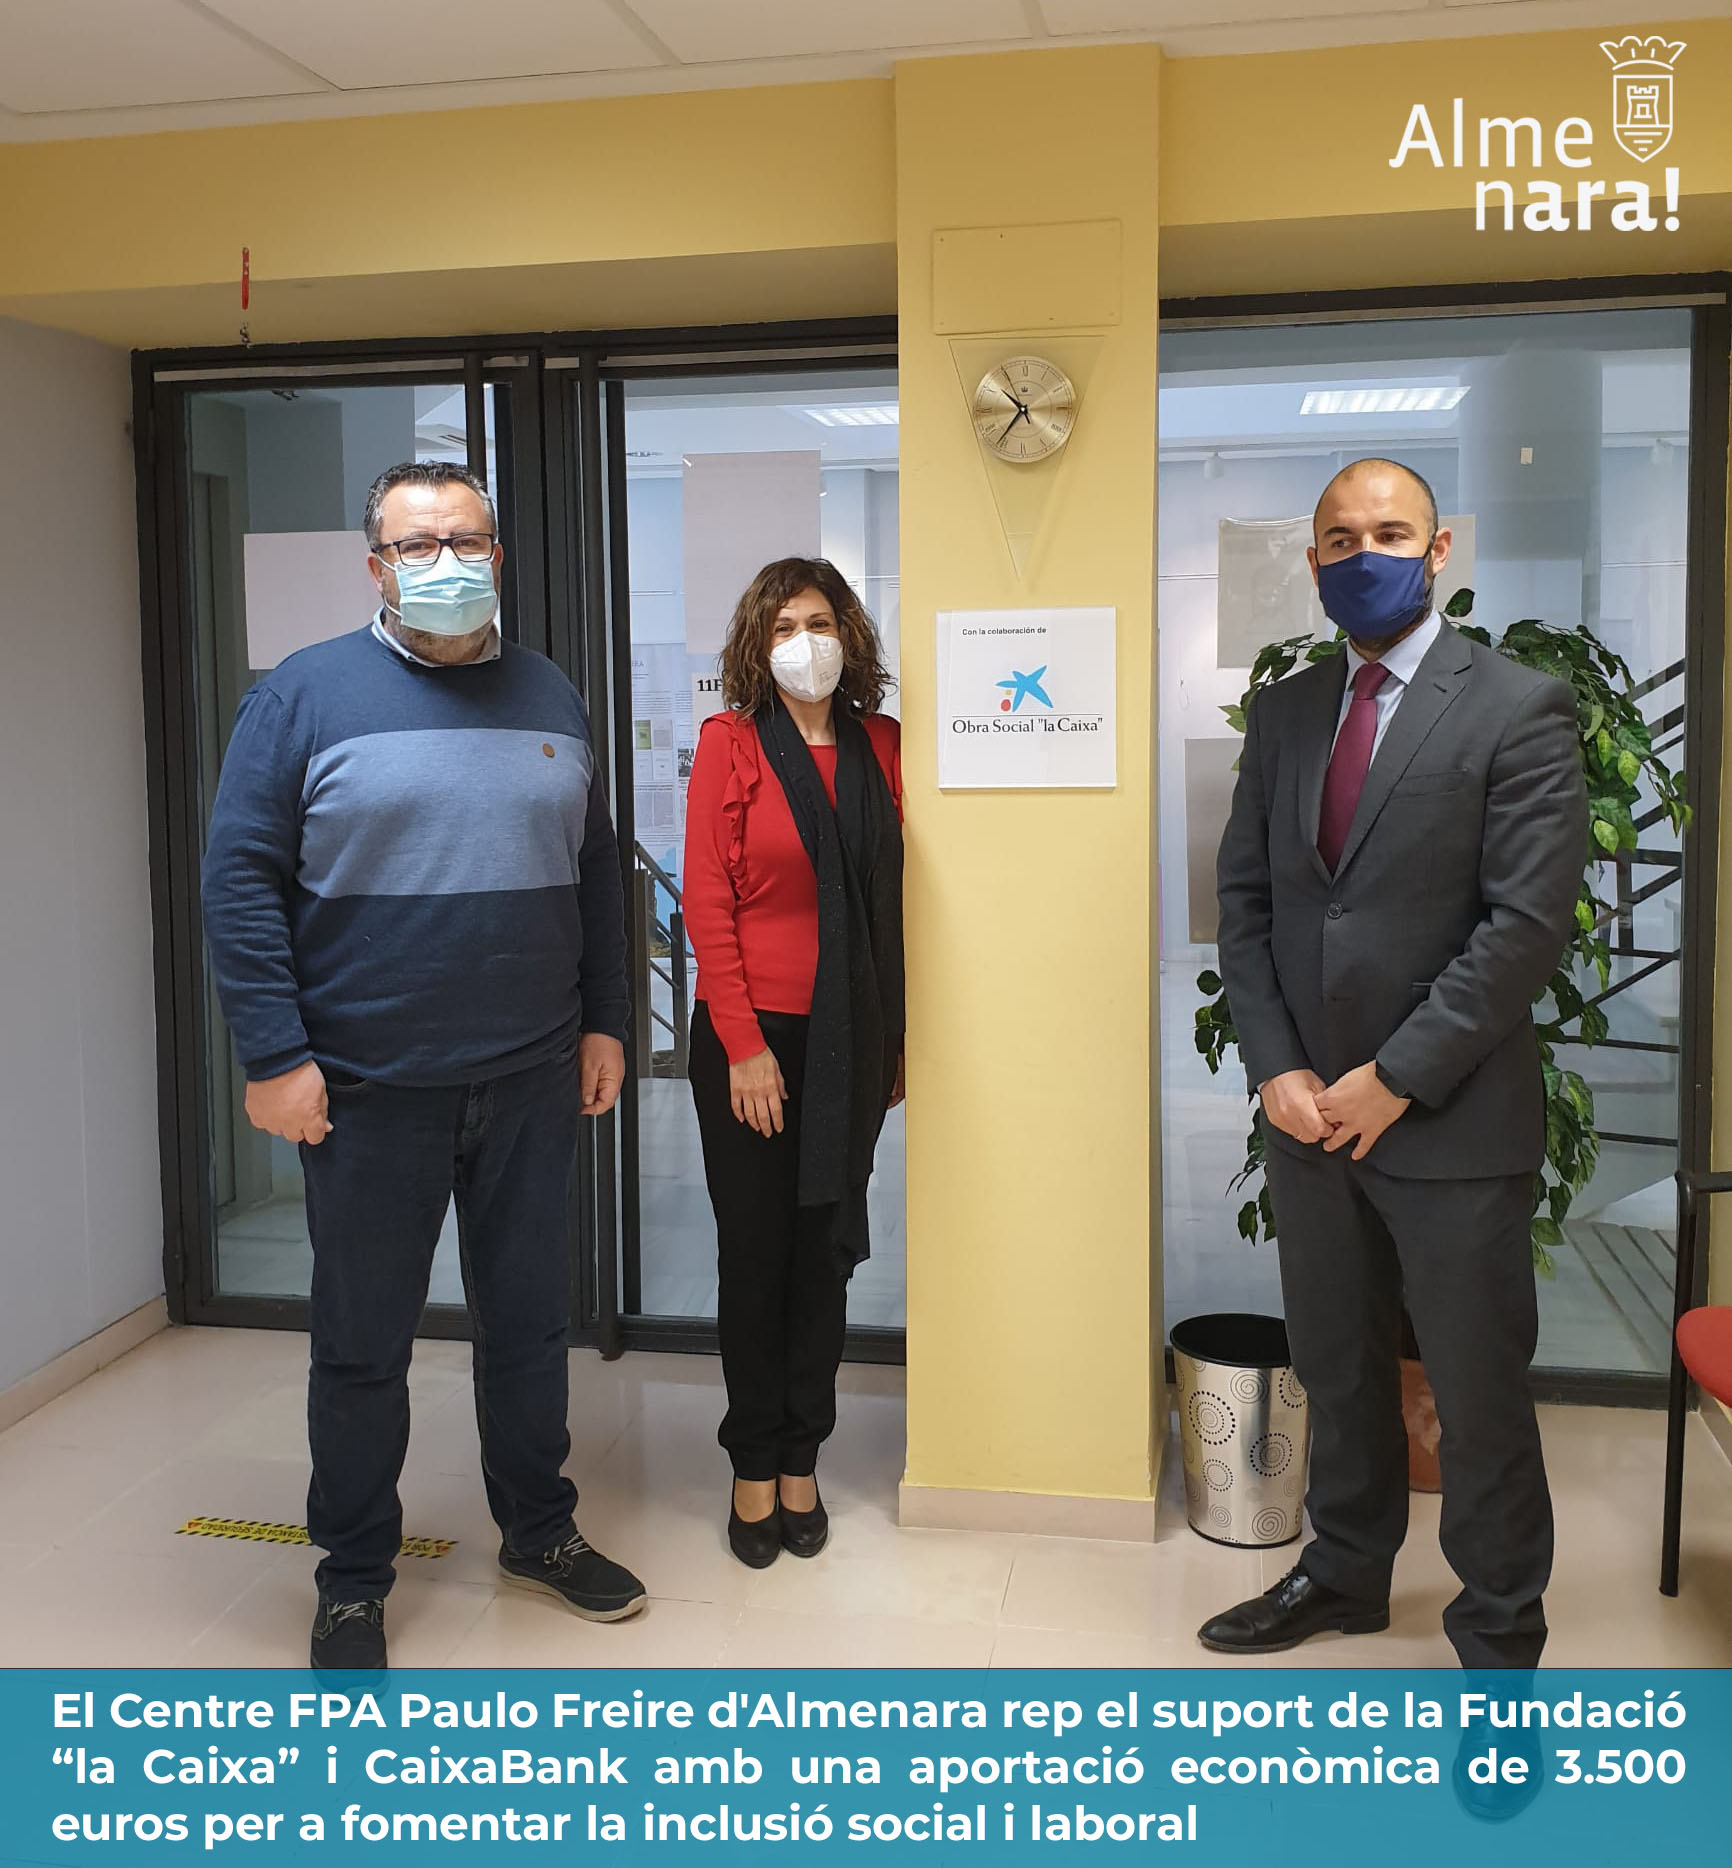 El Centro FPA Paulo Freire de Almenara recibe el apoyo de la Fundación “la Caixa” y CaixaBank con una aportación económica de 3.500 euros